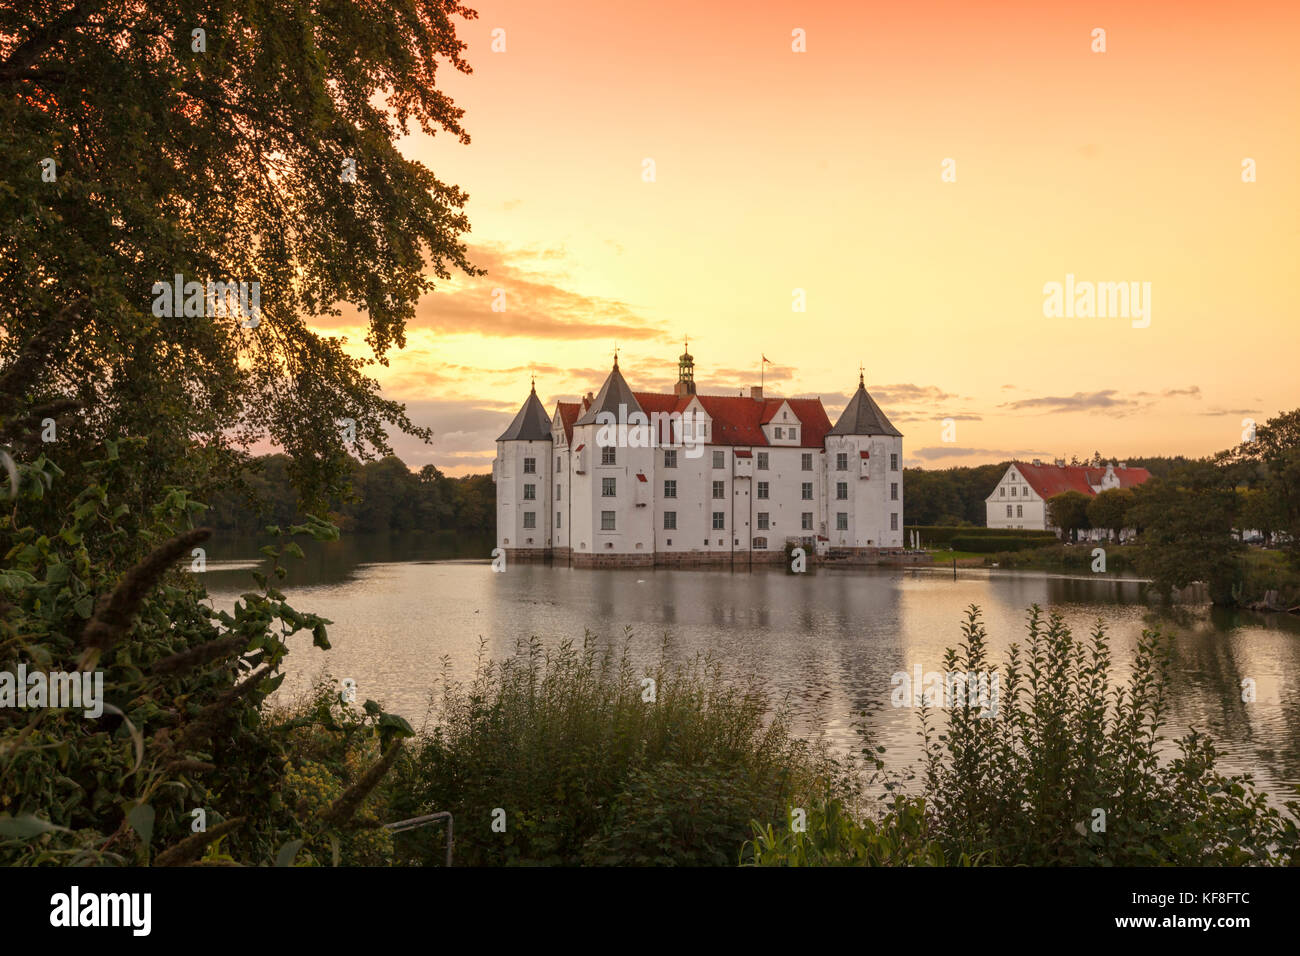 Château d'eau de Glücksburg près de Flensburg, Allemagne, au coucher du soleil Banque D'Images